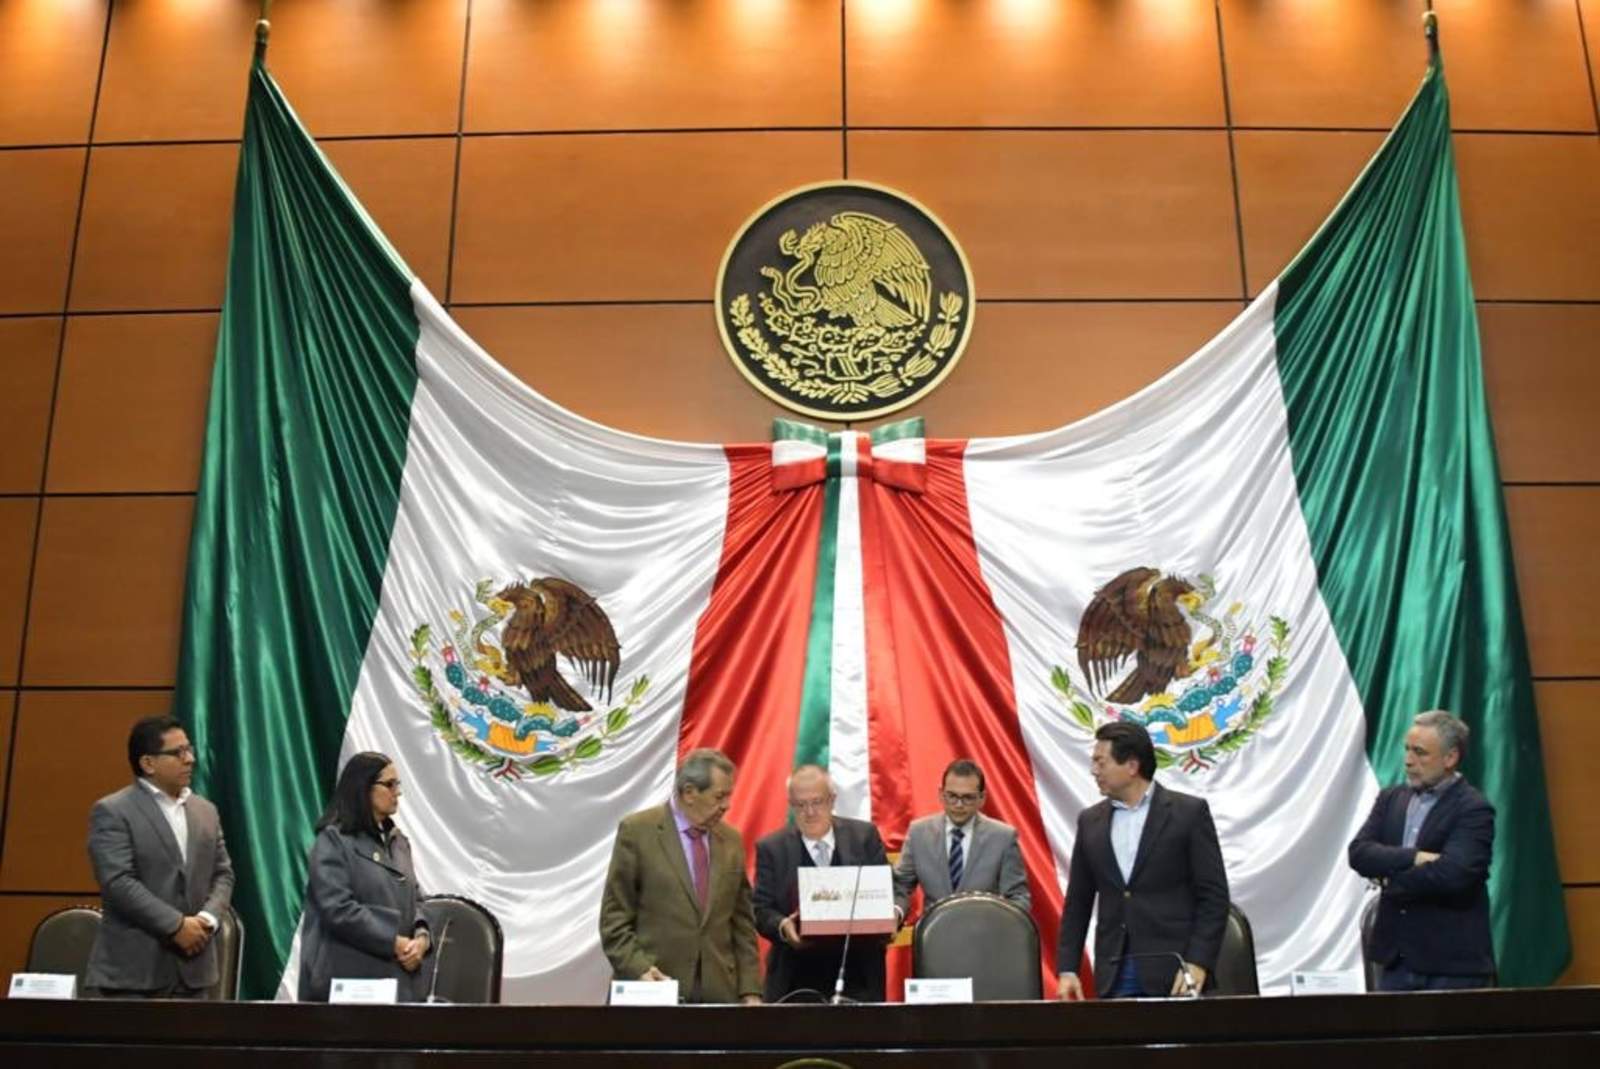 El Paquete, integrado por la Ley de Ingresos y el Presupuesto de Egresos de la Federación, fue recibido por el presidente de la Mesa Directiva de la Cámara de Diputados, Porfirio Muñoz Ledo. (ESPECIAL)